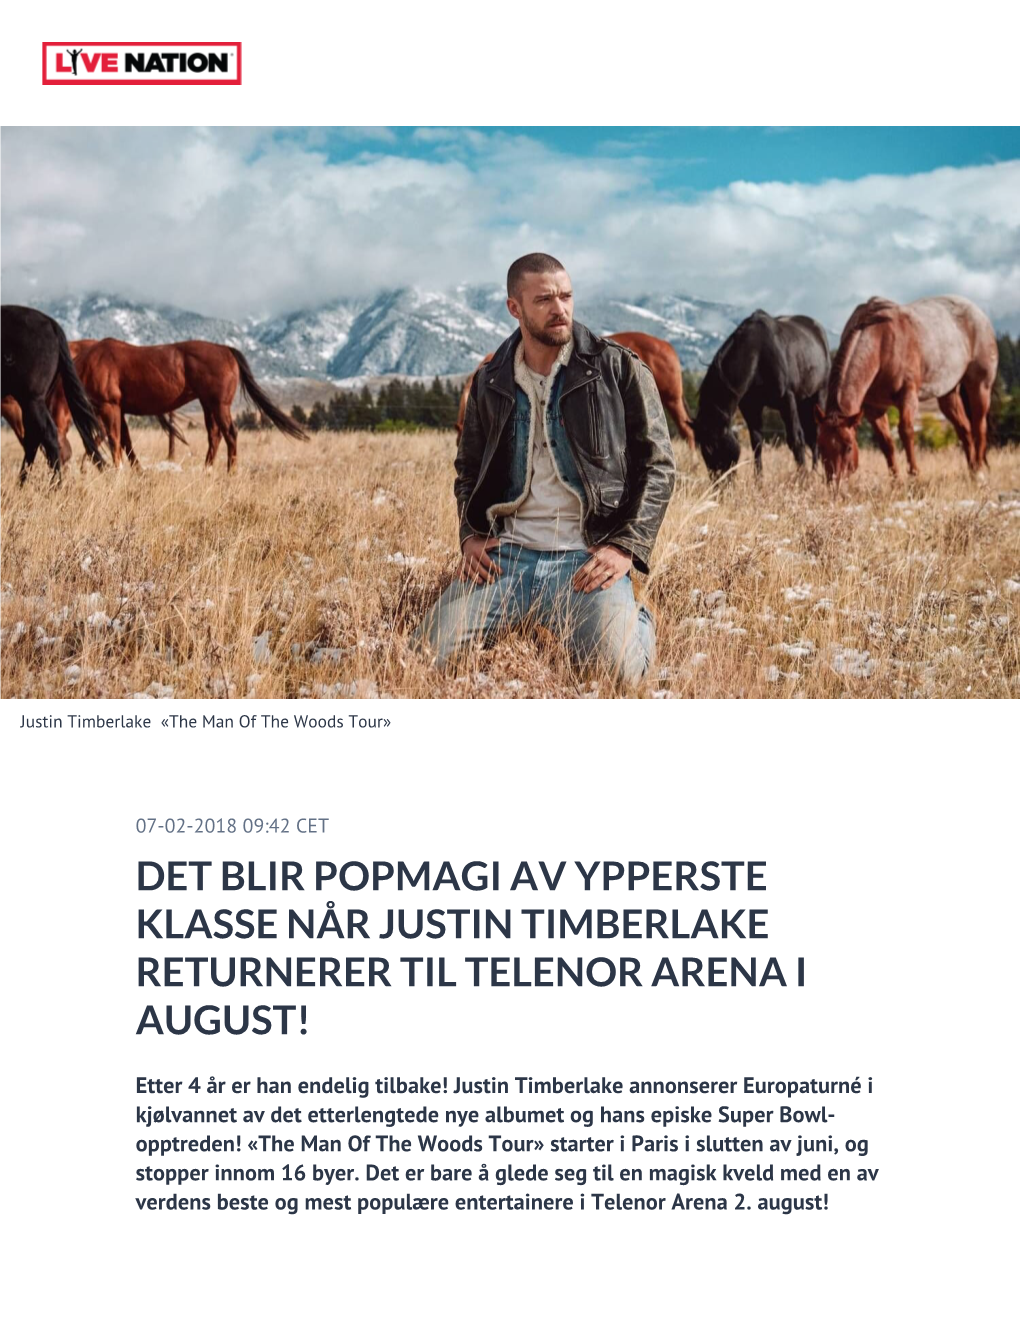 Det Blir Popmagi Av Ypperste Klasse Når Justin Timberlake Returnerer Til Telenor Arena I August!